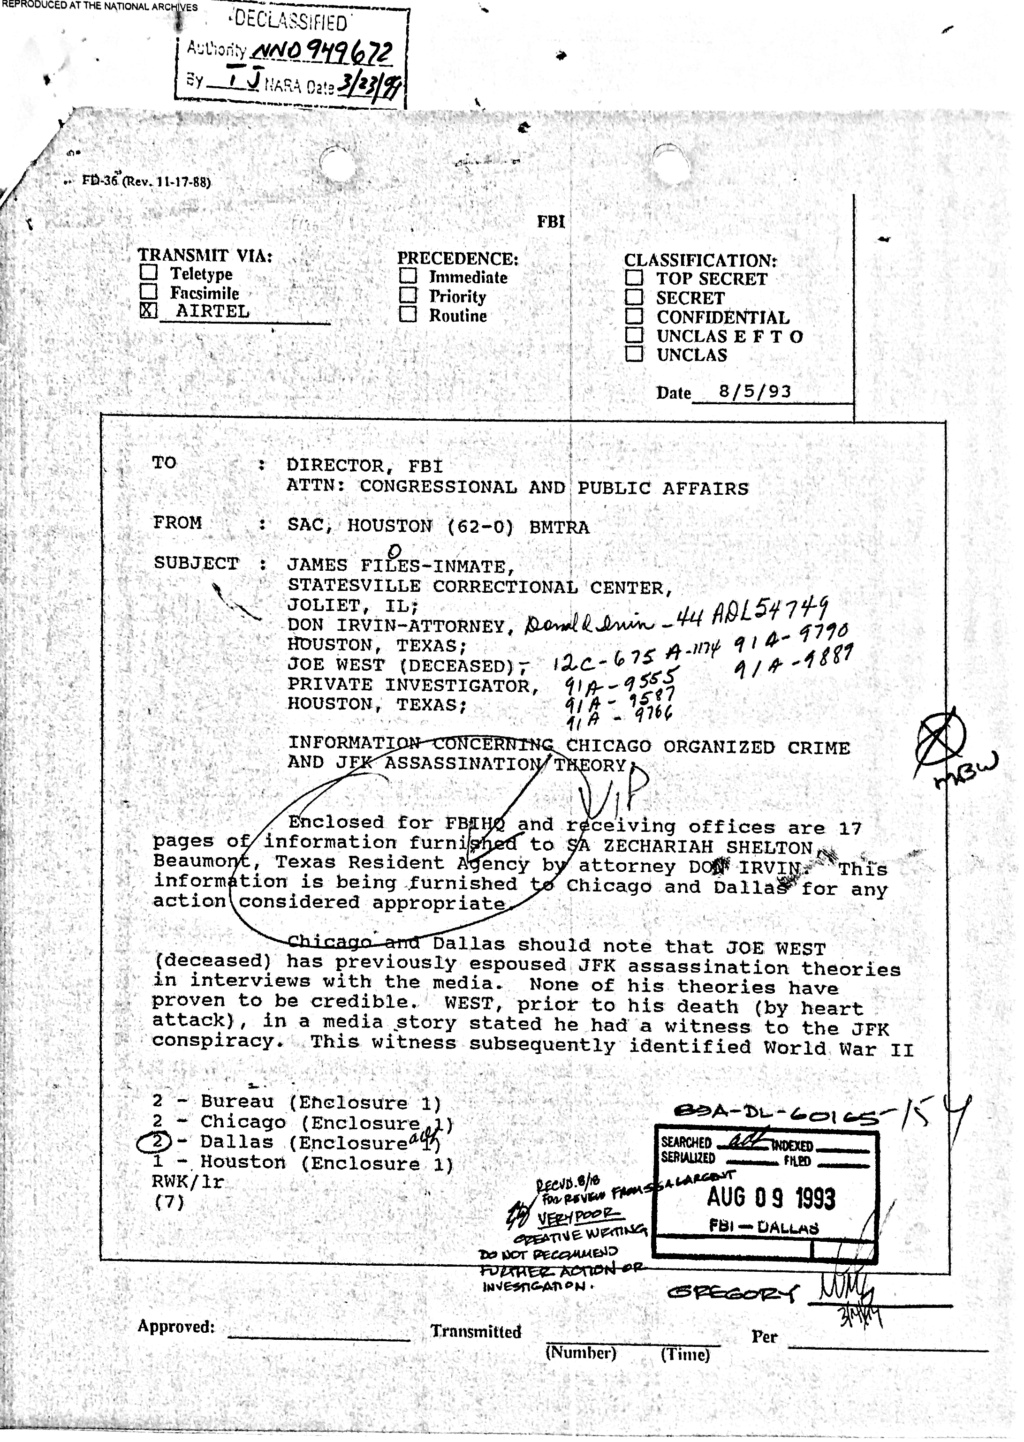 tsbd - Joseph Mengele was inside the TSBD when it went down!!!!! E8878010